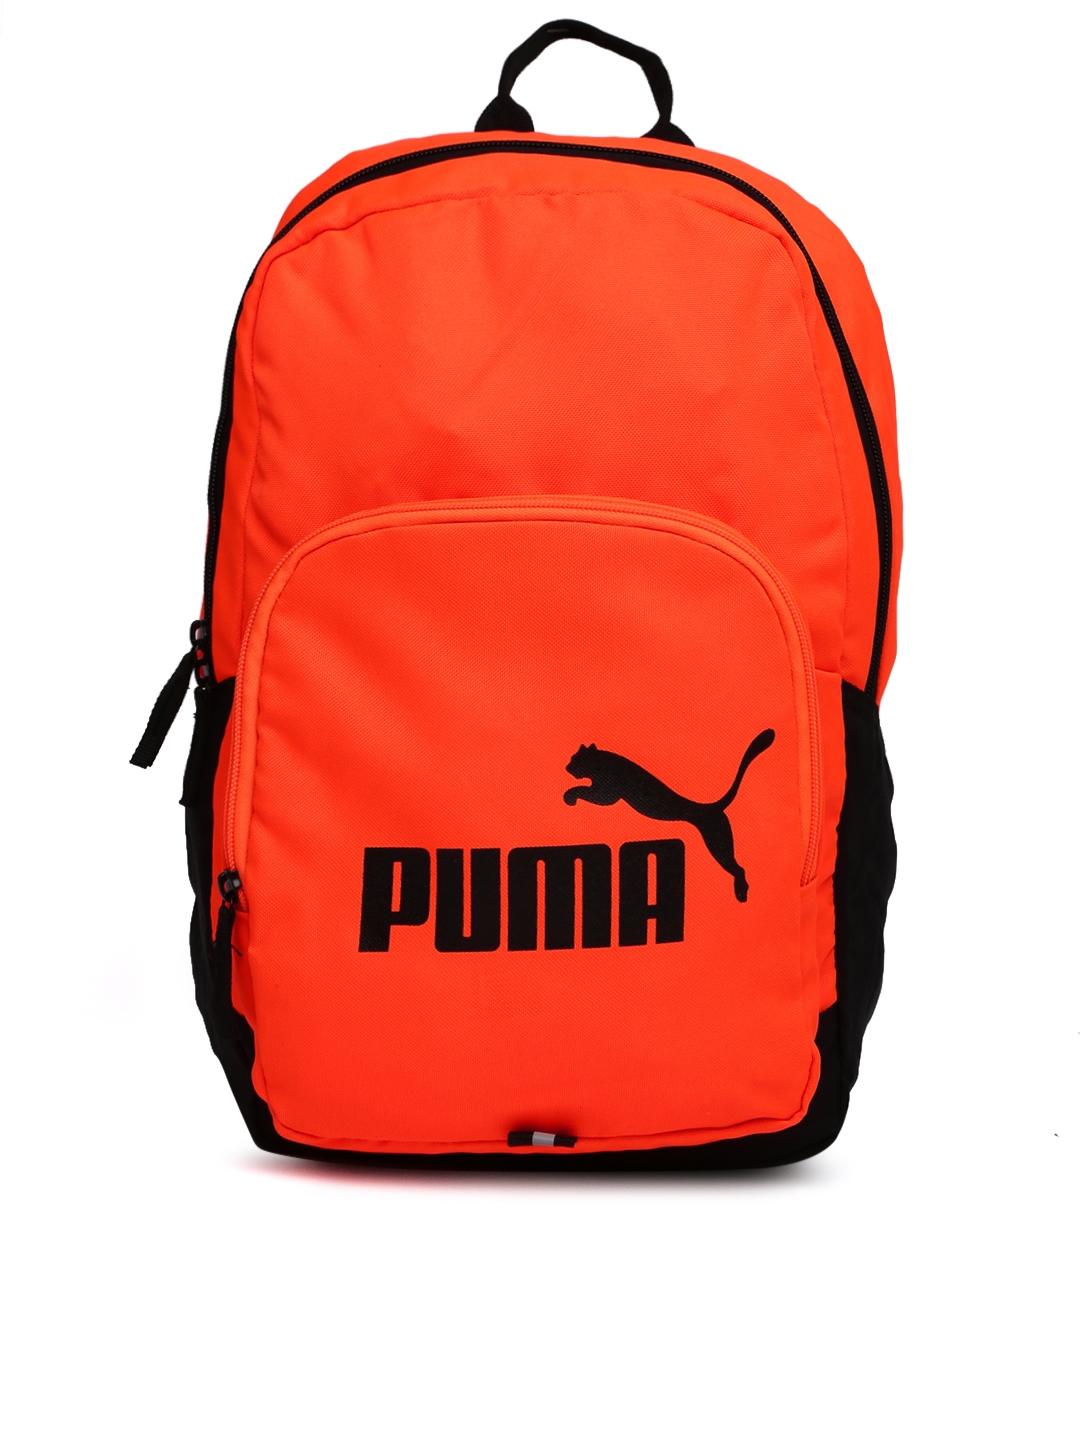 puma bags orange